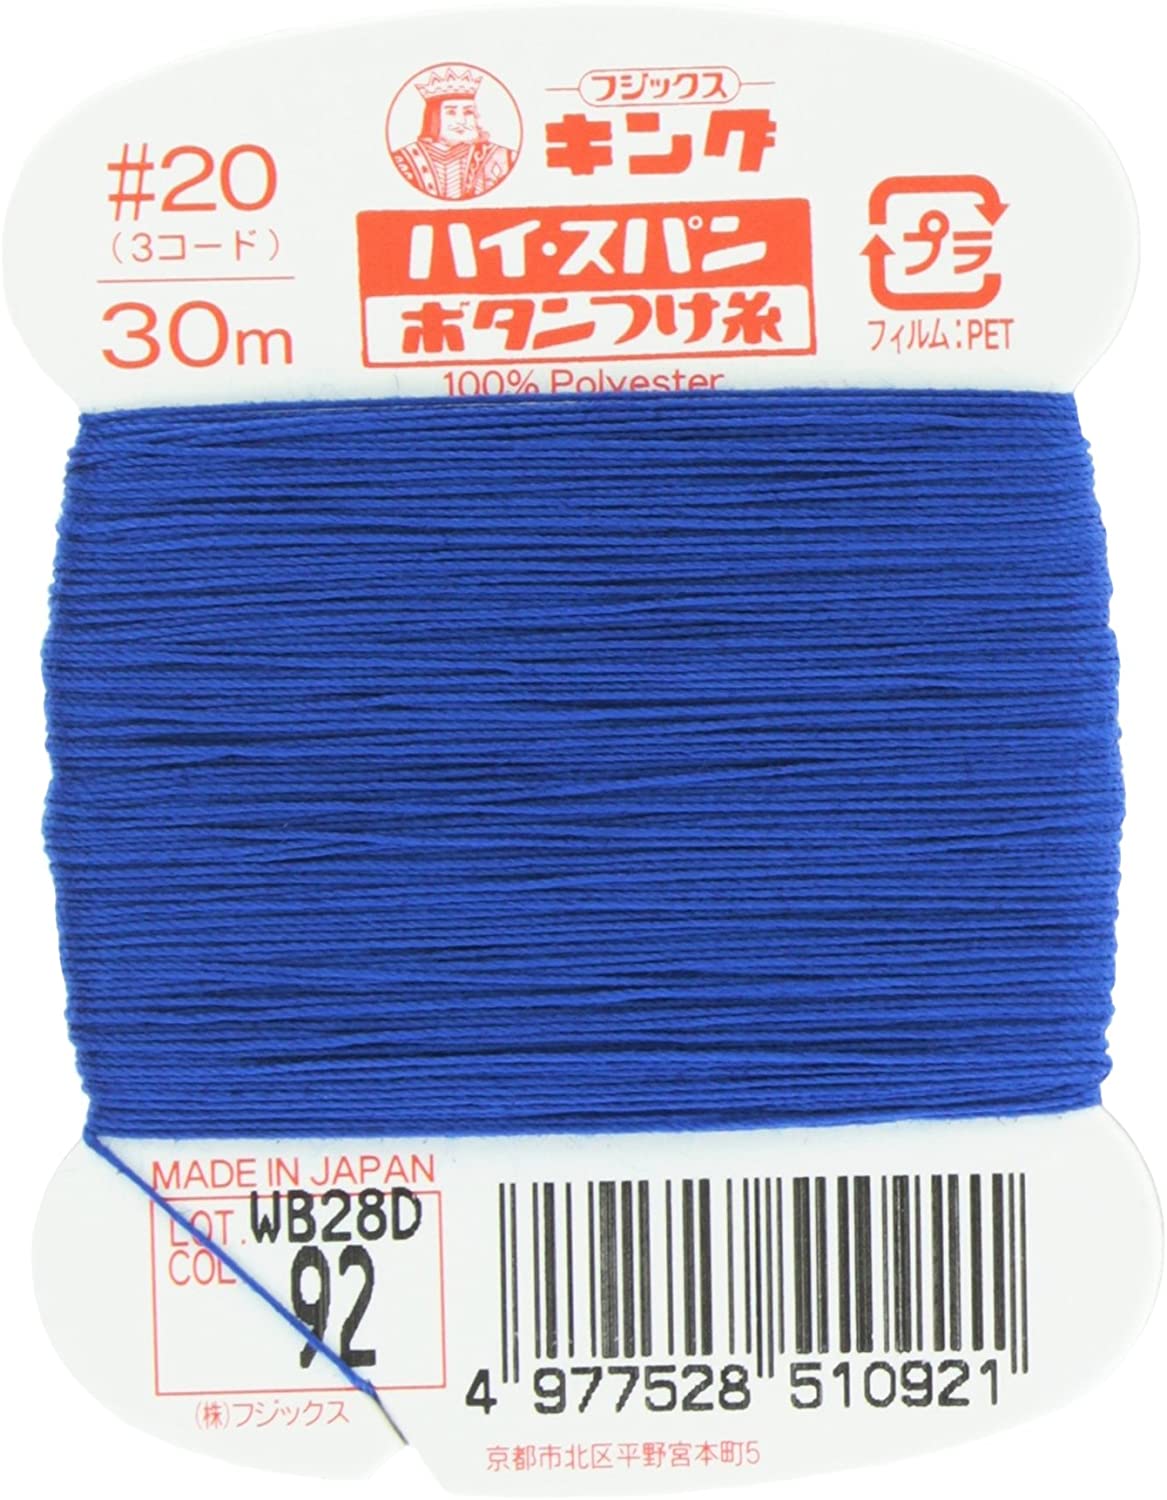 FK51-92 ハイスパンボタンつけ糸 #20 30m巻 (枚)